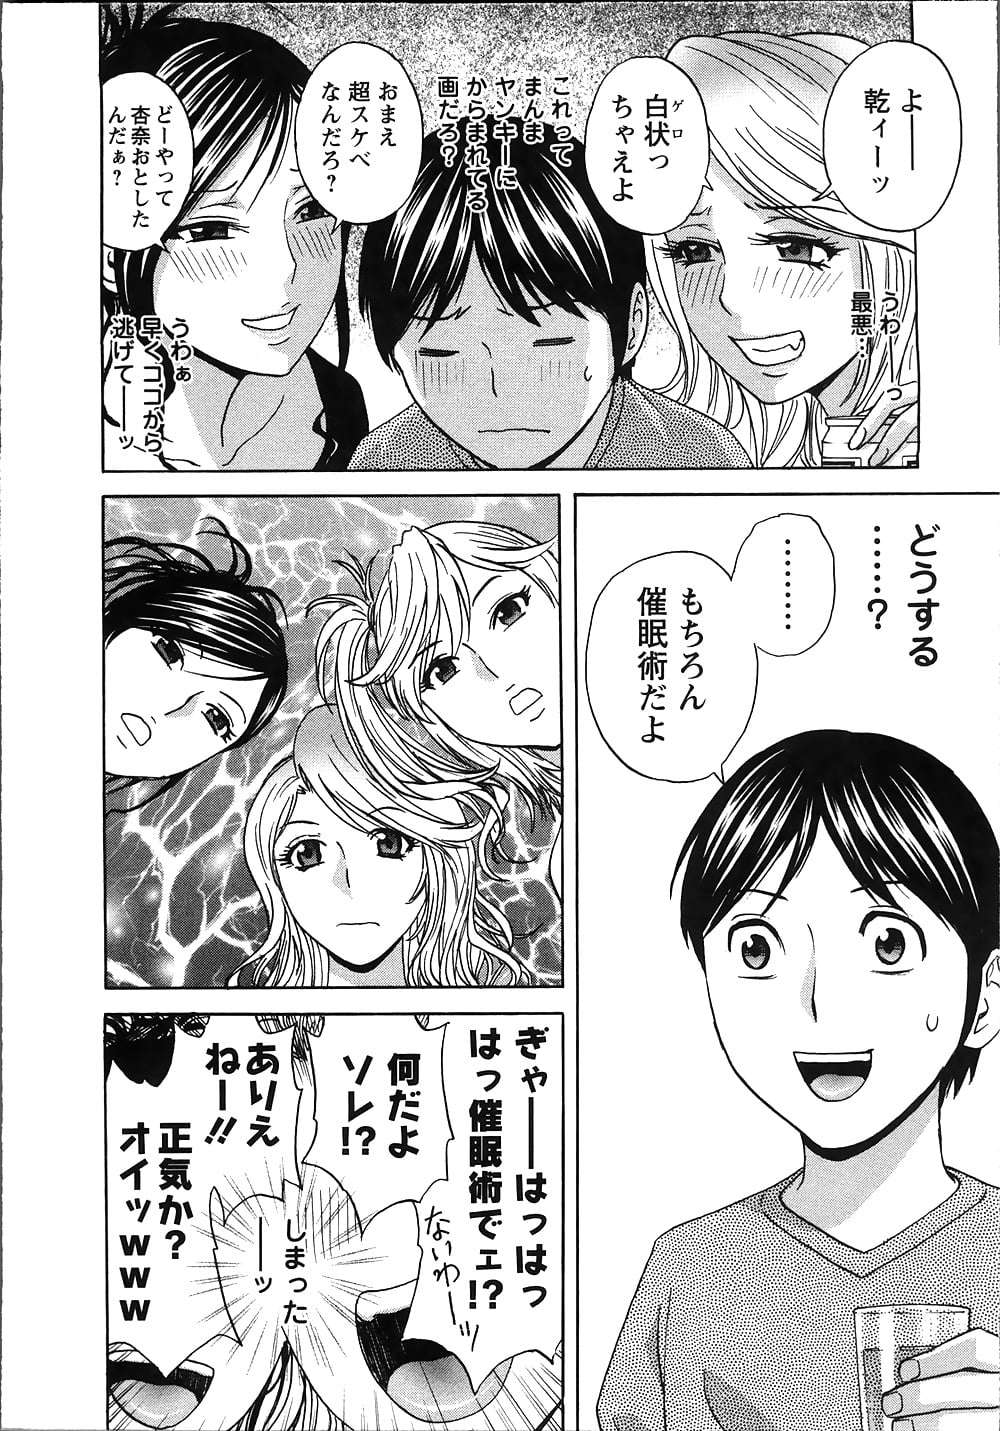 manga 15